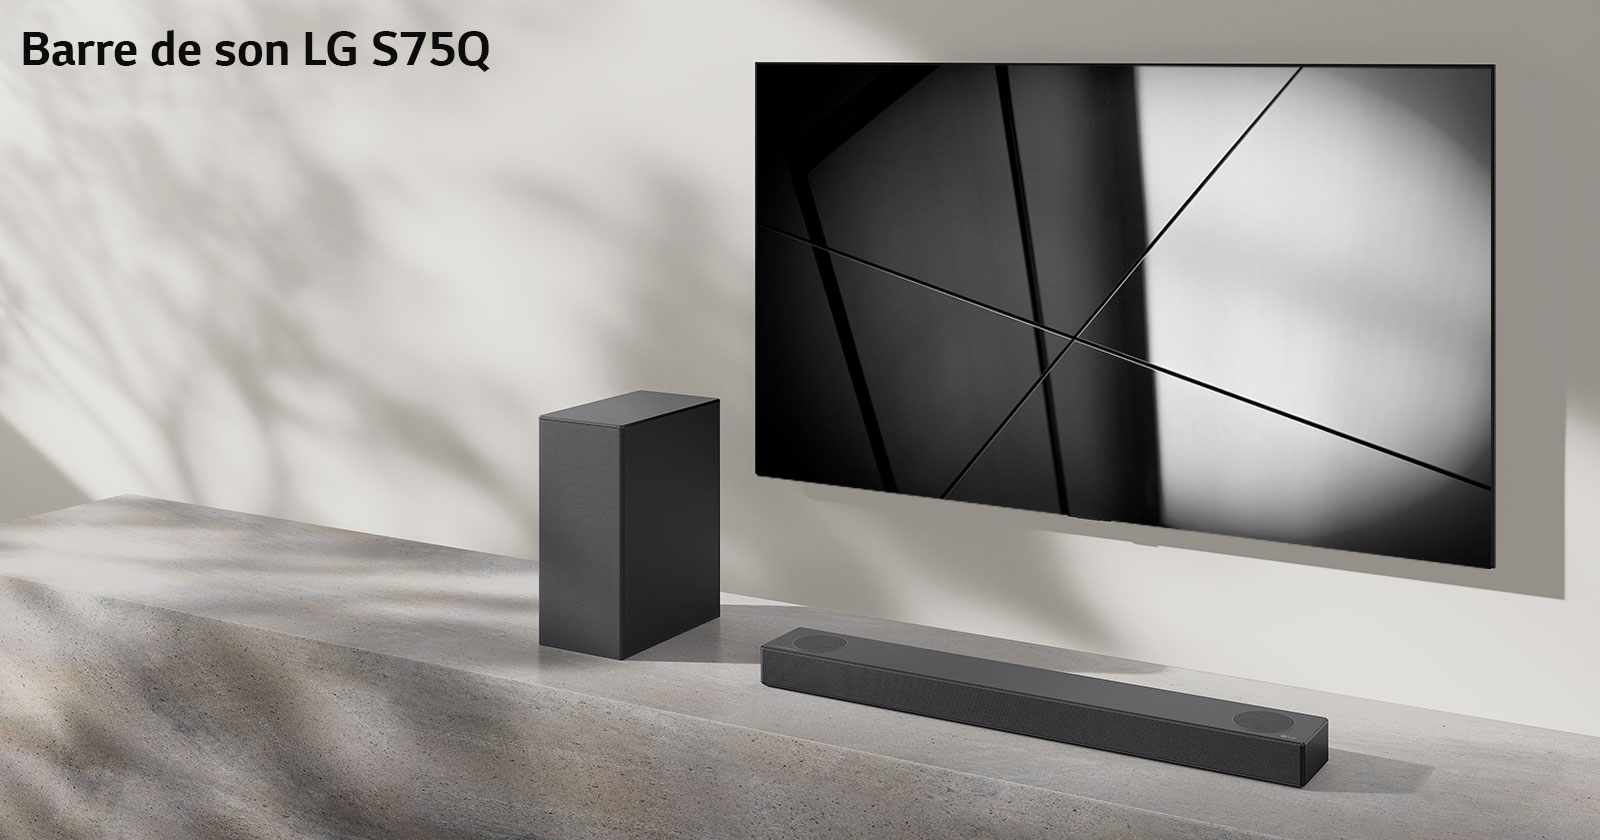 La barre de son S75Q de LG et le téléviseur LG sont placés ensemble dans le salon. Le téléviseur est allumé et projette une image en noir et blanc.